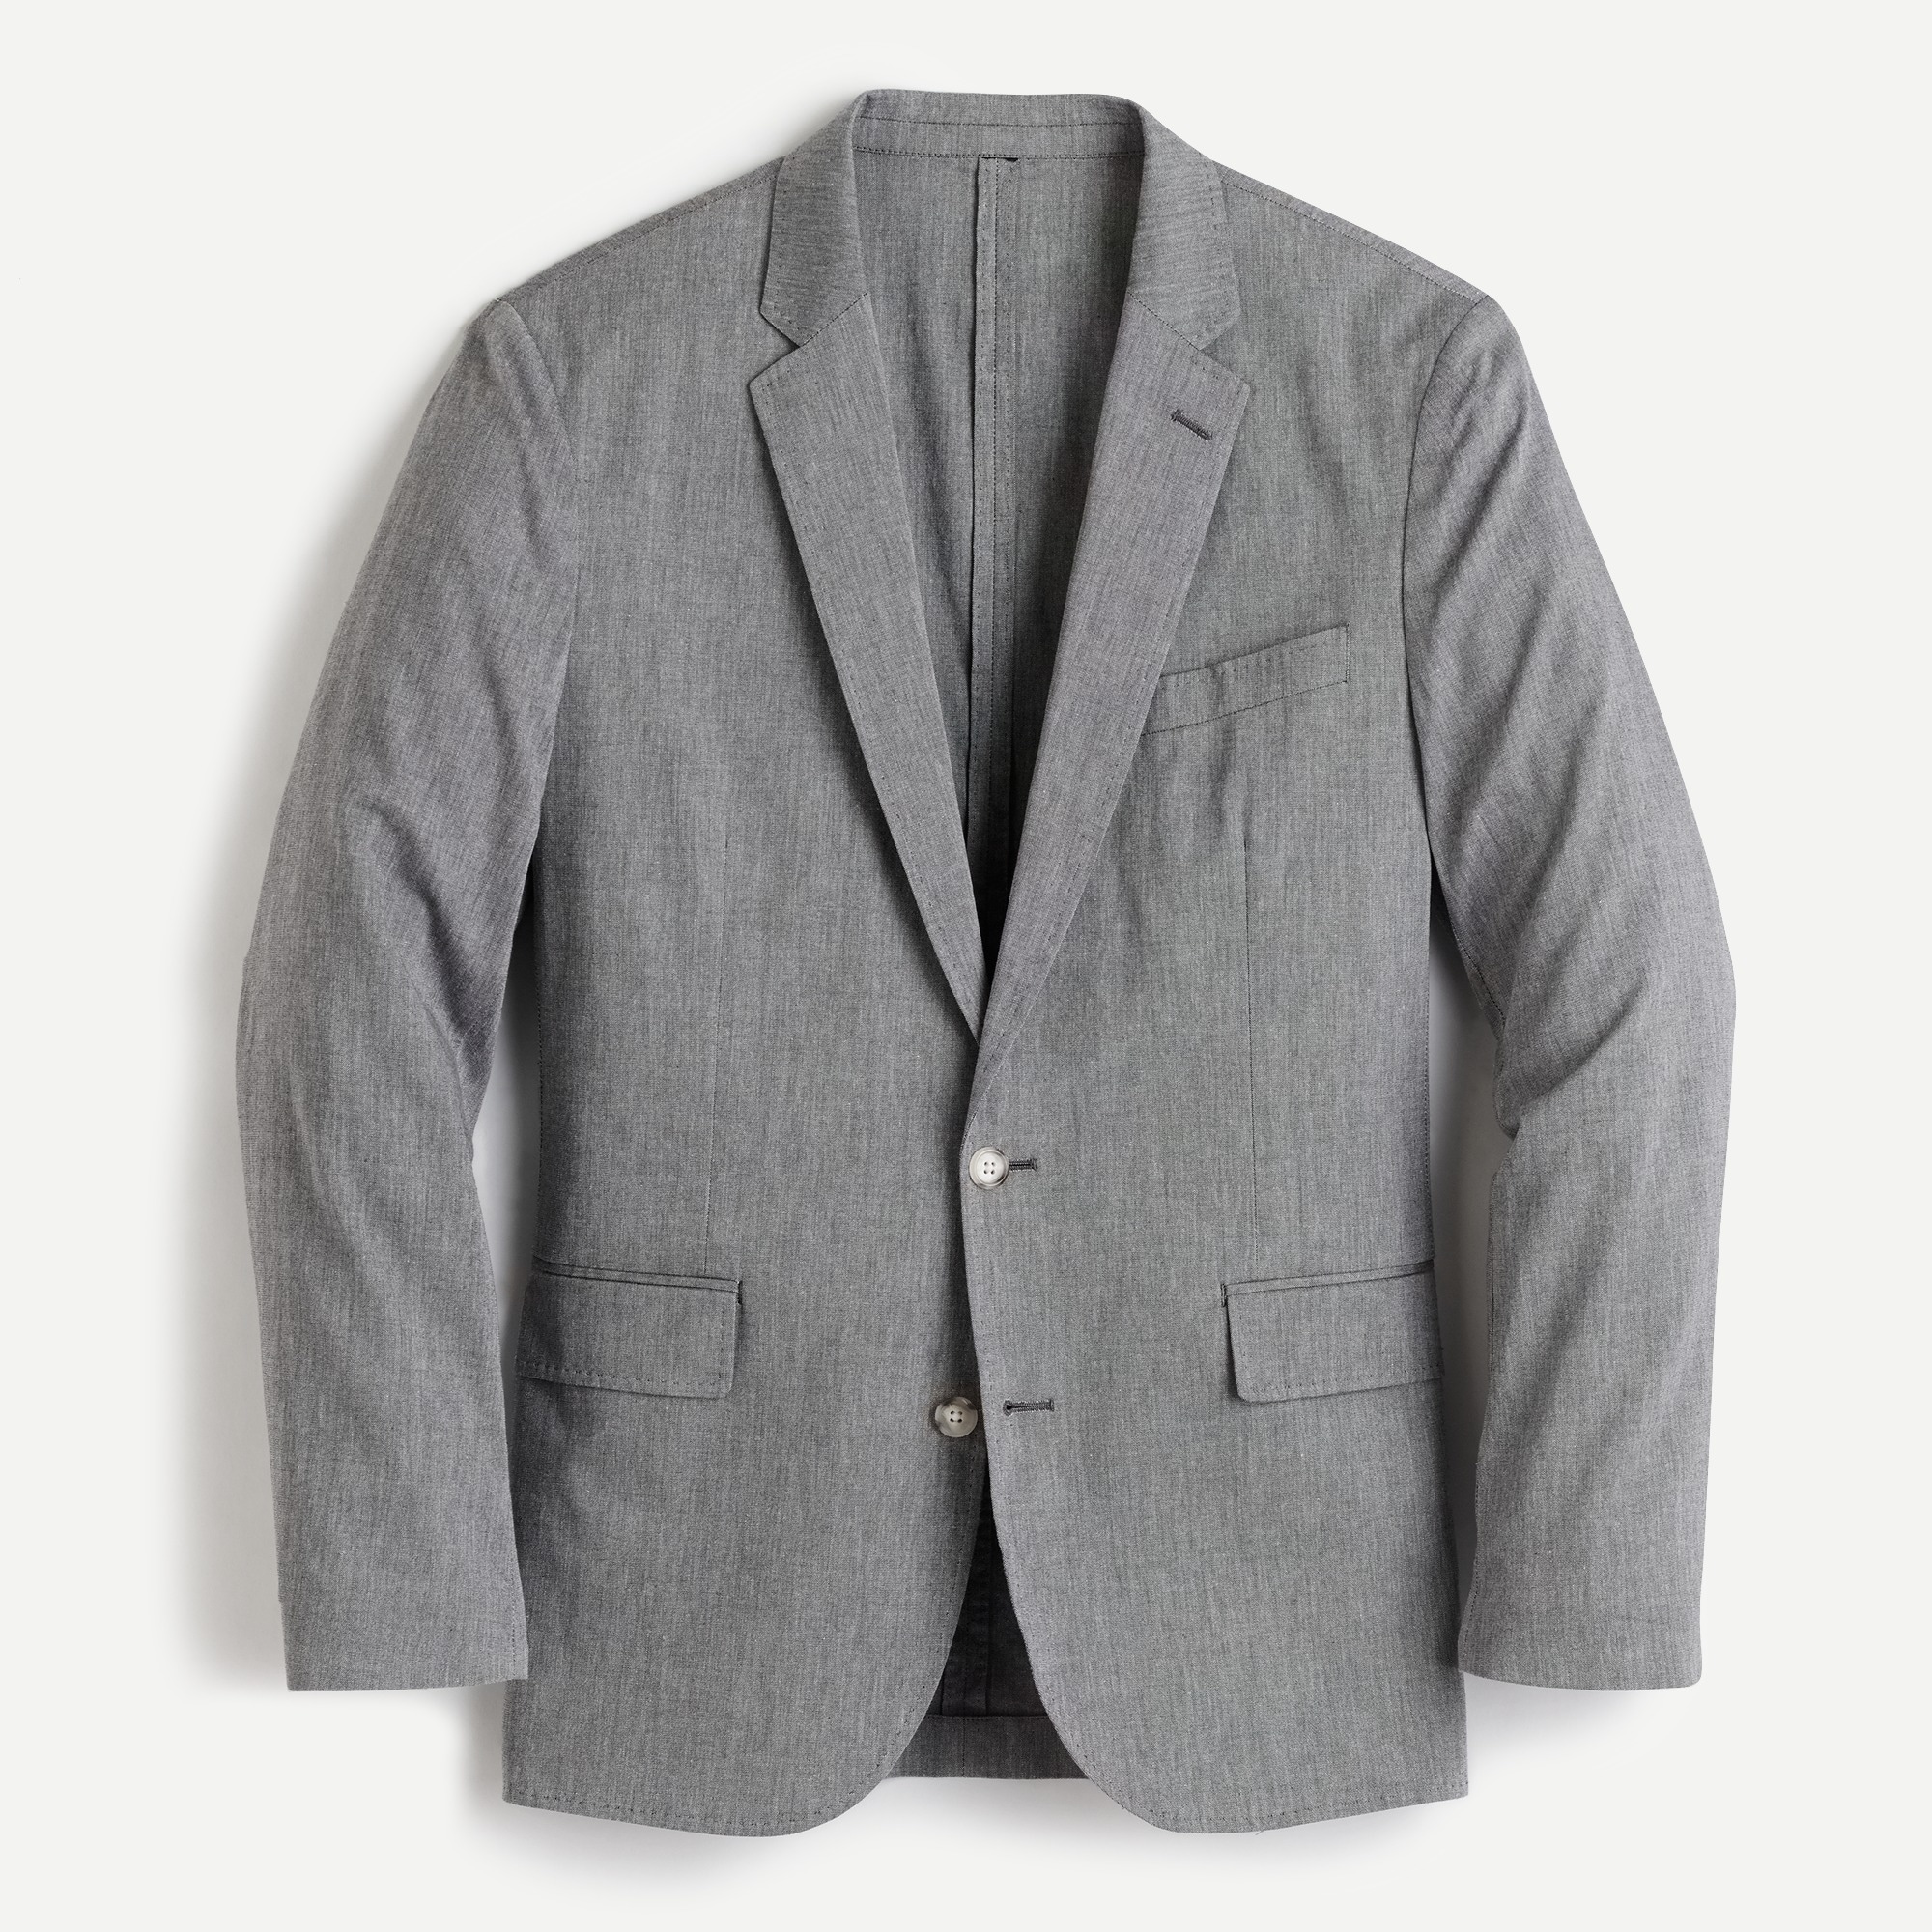 men's suit jackets under $50